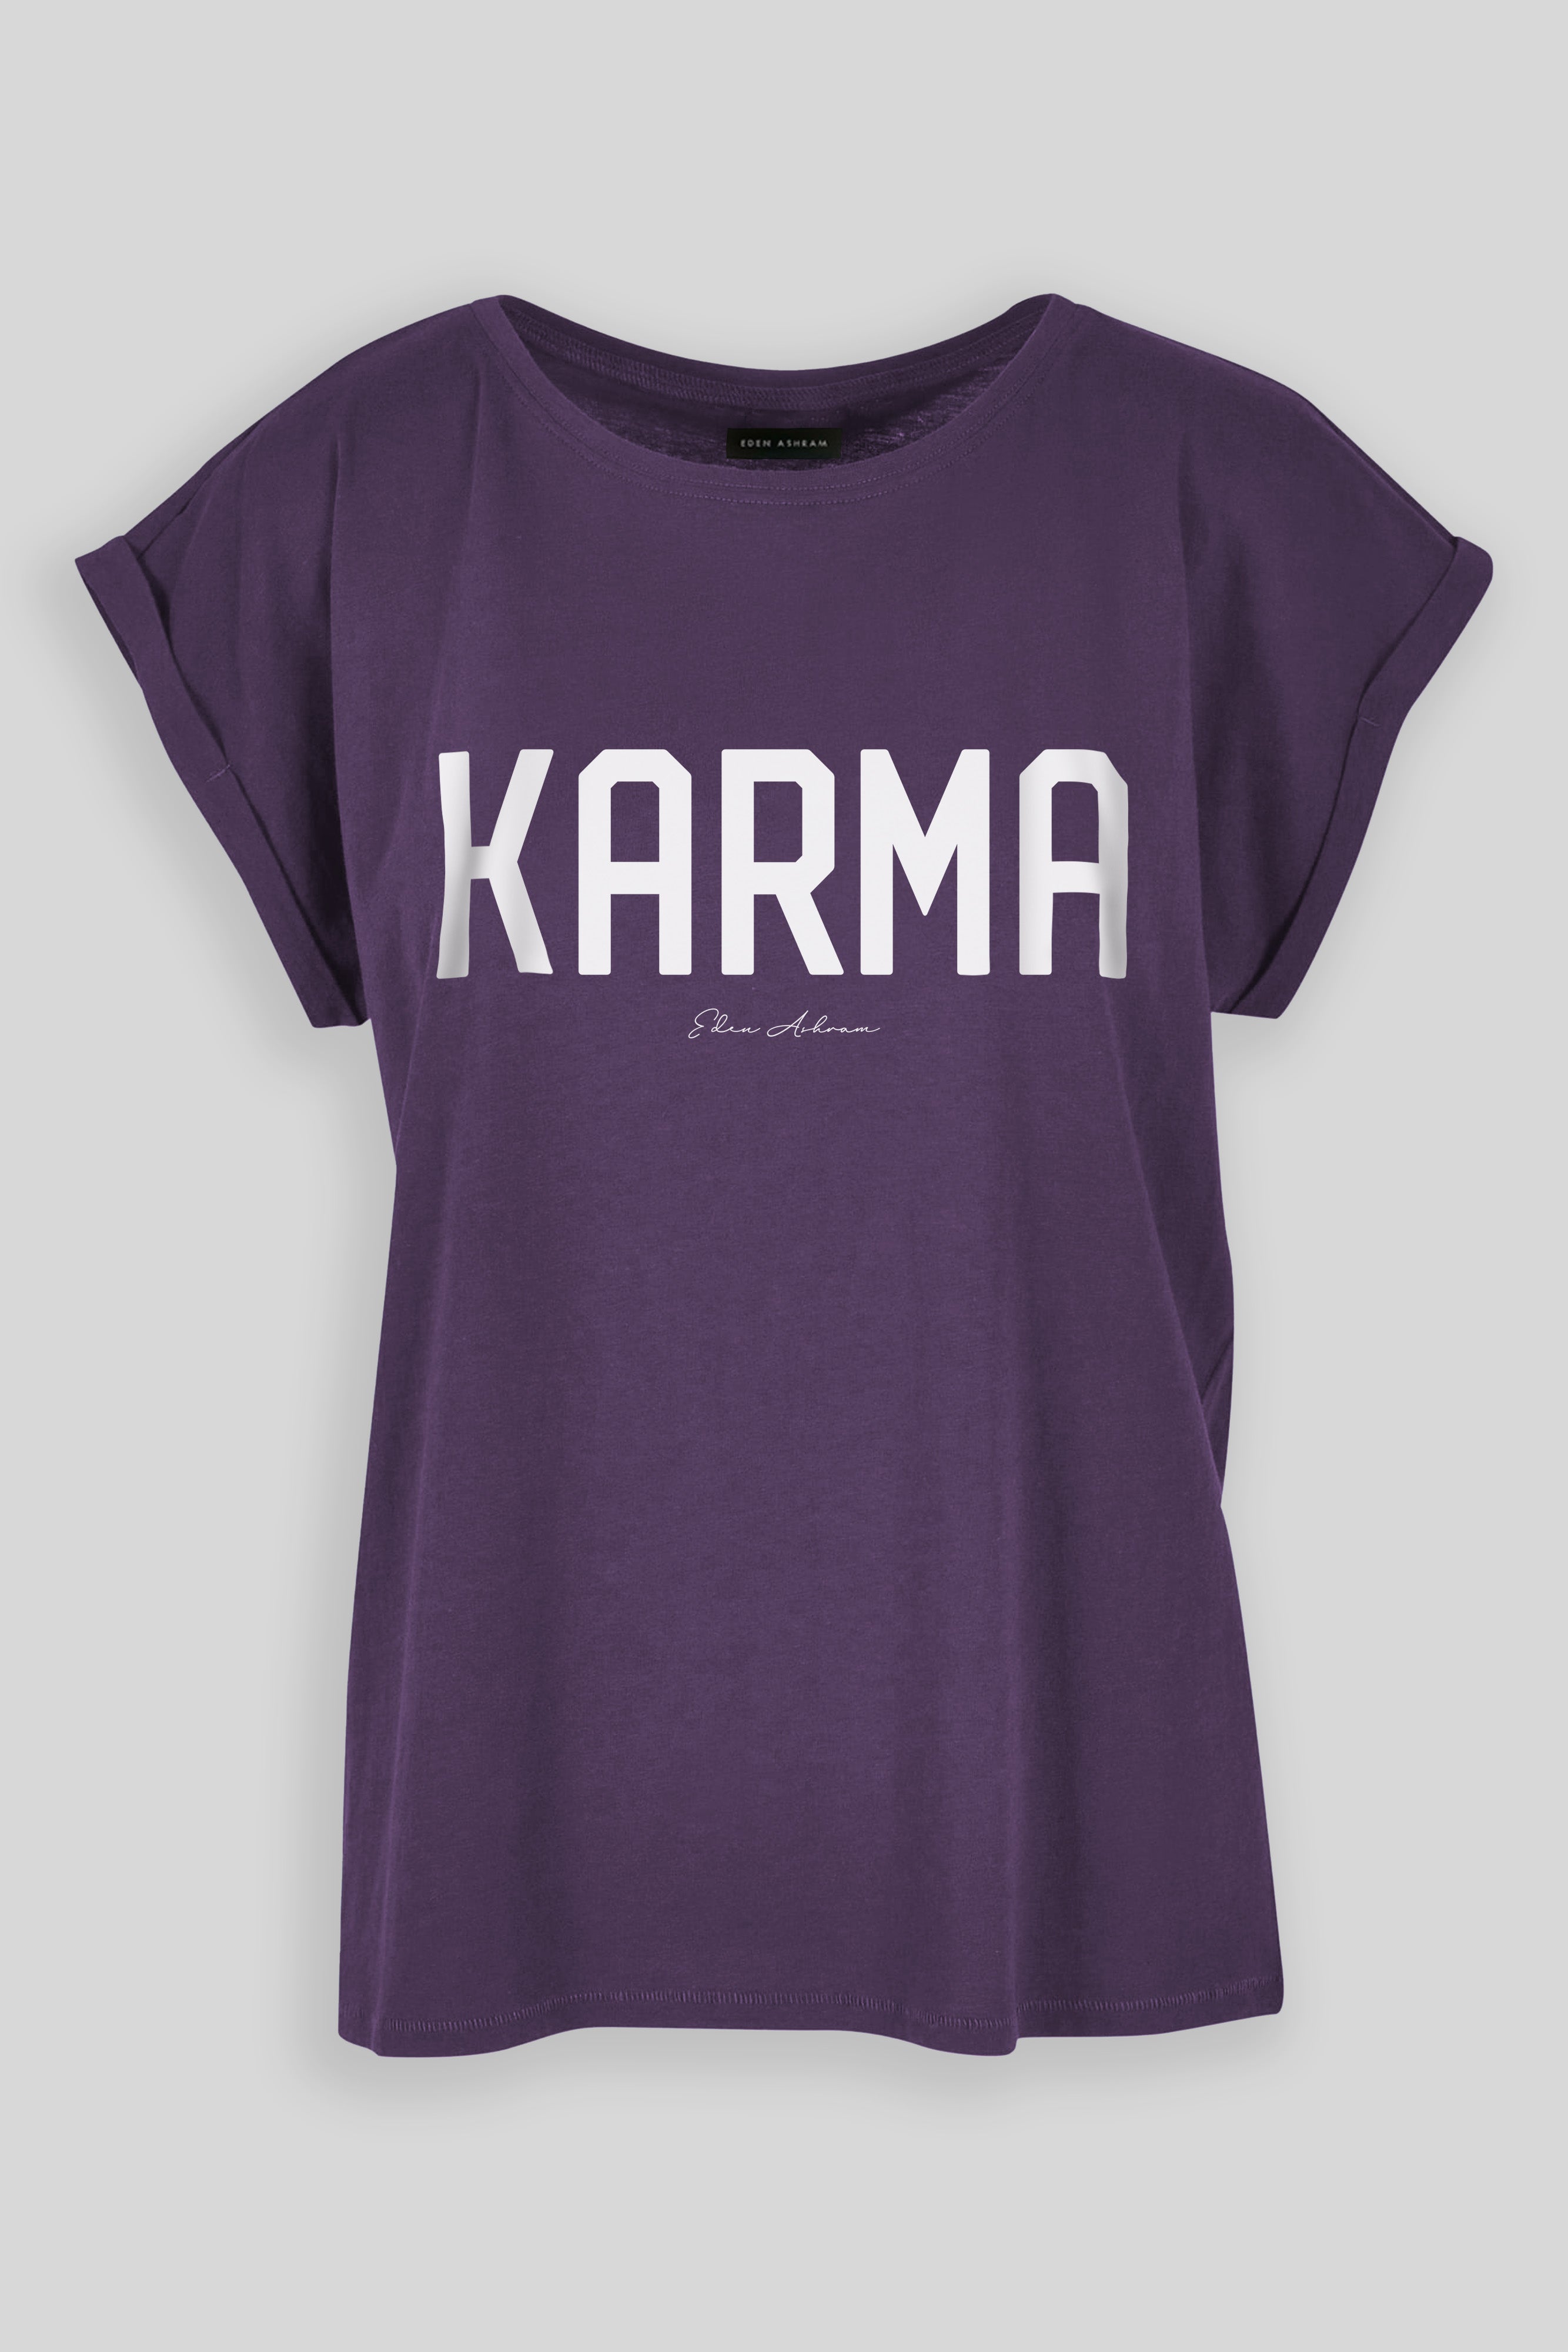 EDEN ASHRAM KARMA Cali T-Shirt Purple